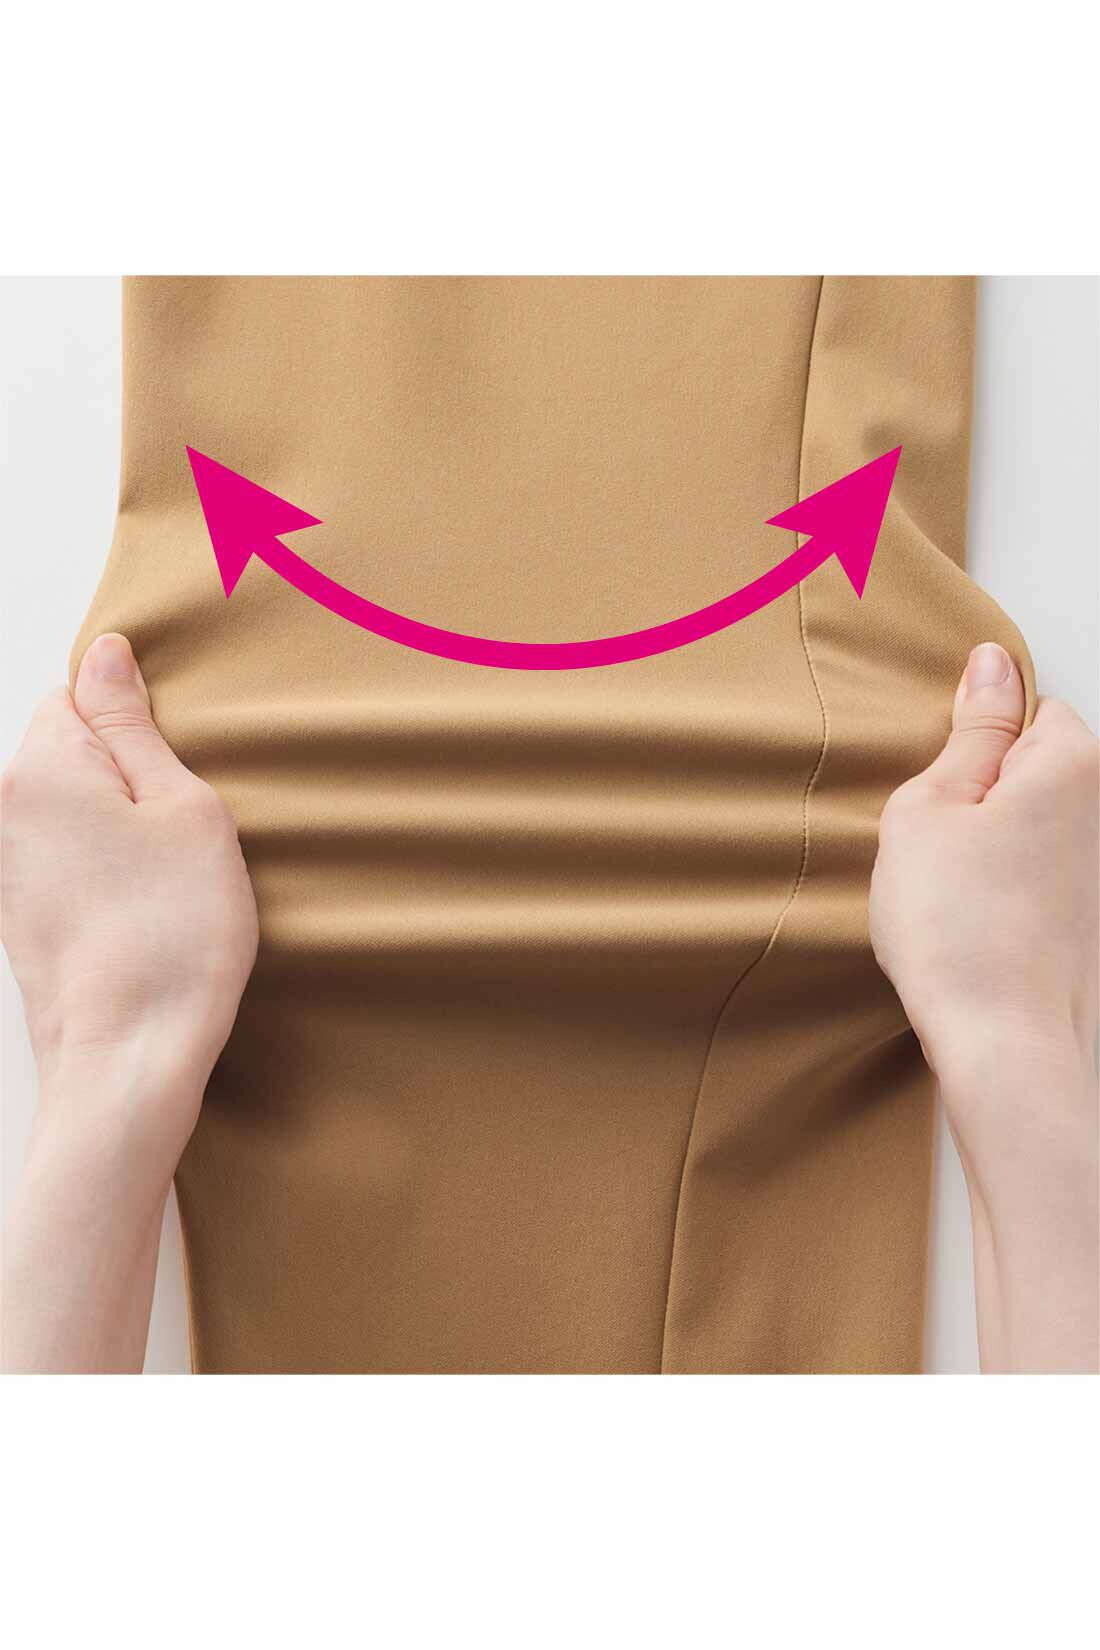 IEDIT|IEDIT[イディット]　ぐいっとしなやか サイドタックデザイン ストレッチ布はく素材のエアノビワイドパンツ〈ベージュ〉|動きに応じてぐいっと伸びるストレッチ素材は、はいているのを忘れるほど軽やかでらくなはき心地。